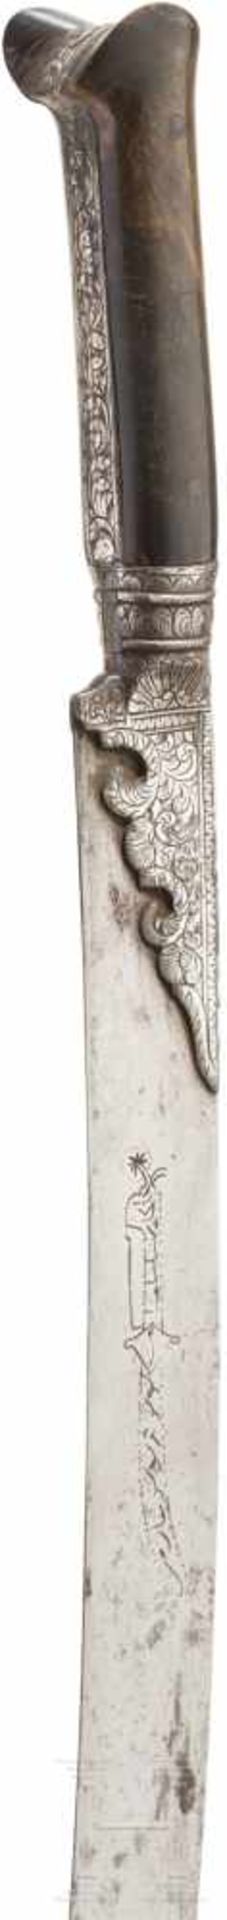 Silbermontierter Yatagan, osmanisch, Ende 18. Jhdt.Typische, leicht gekrümmte Rückenklinge mit - Bild 4 aus 4